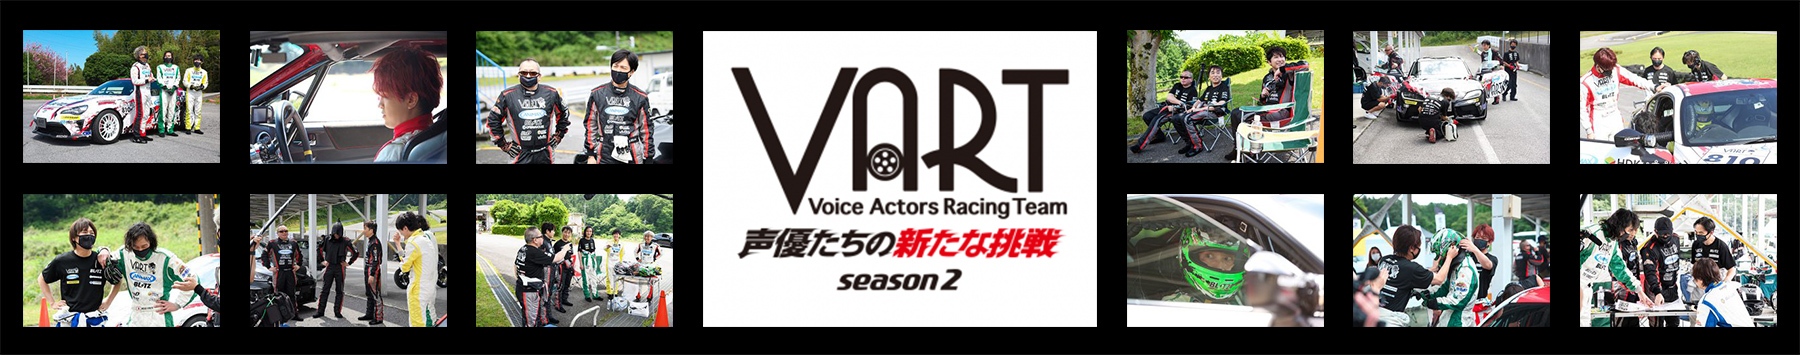 VART-声優たちの新たな挑戦- season2 サムネイル画像